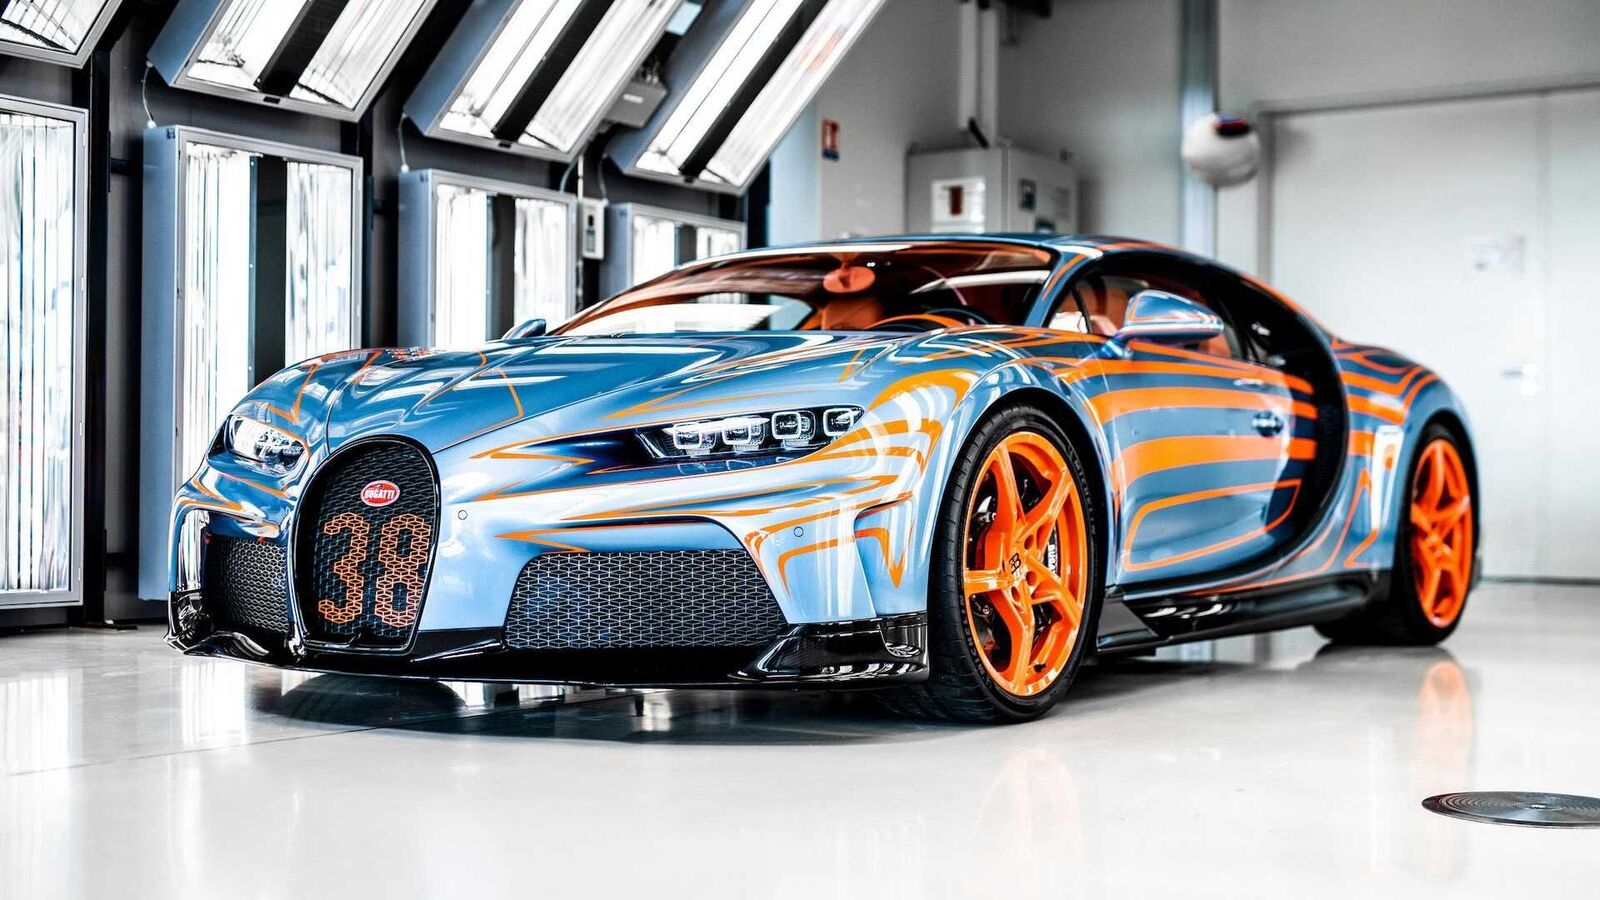 2021 Bugatti Chiron Super Sport 300+ Price & Specifications - The